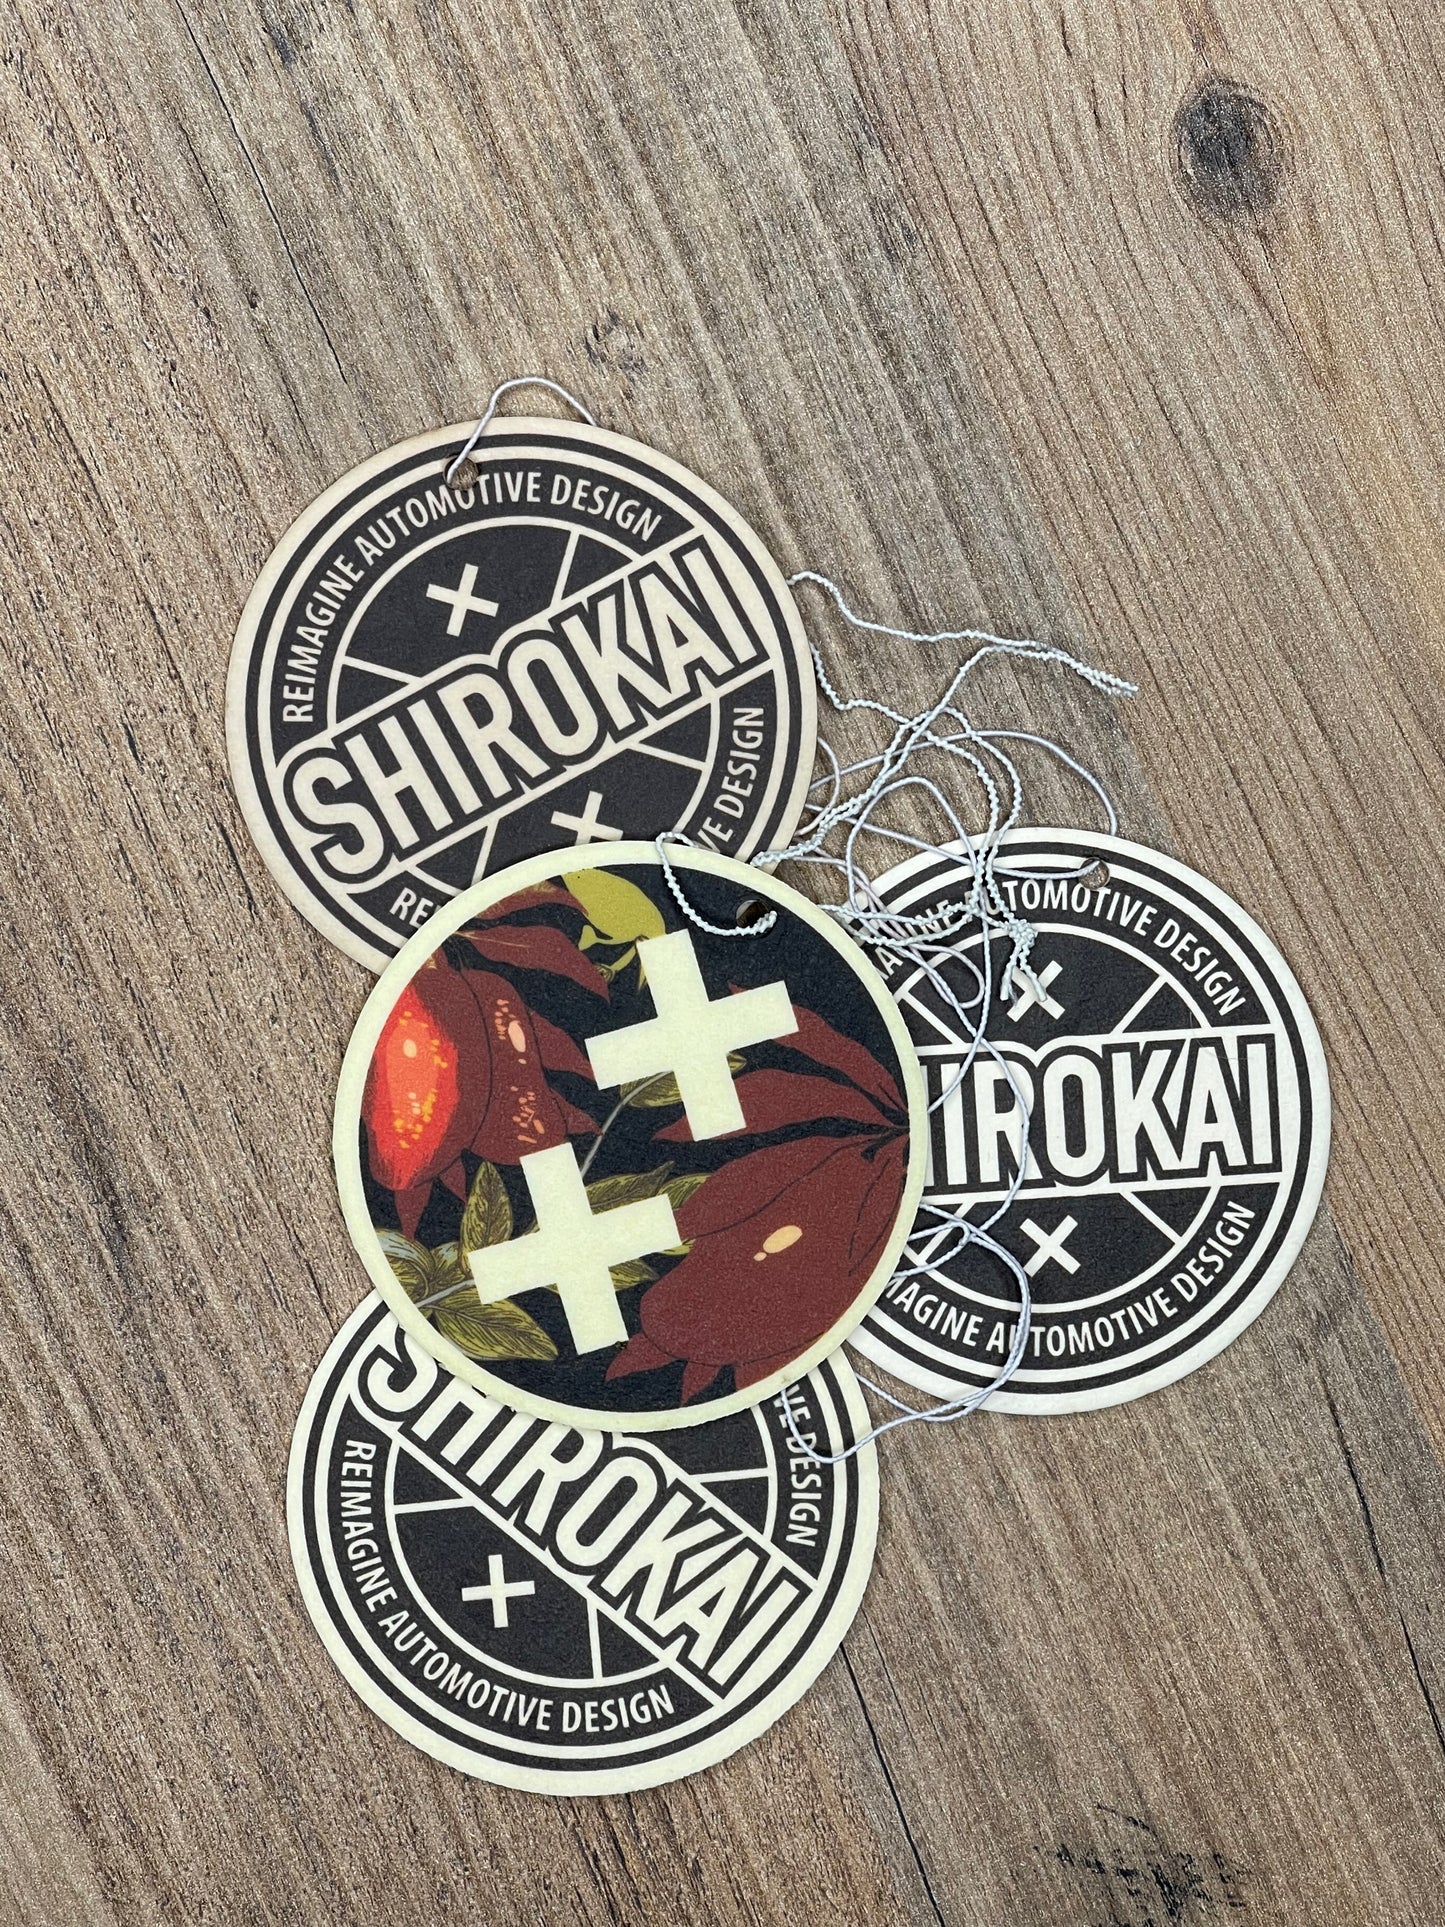 
                  
                    SHIROKAI Logo exclusive aroma Air-freshener - SHIROKAI - widebody kits 
                  
                